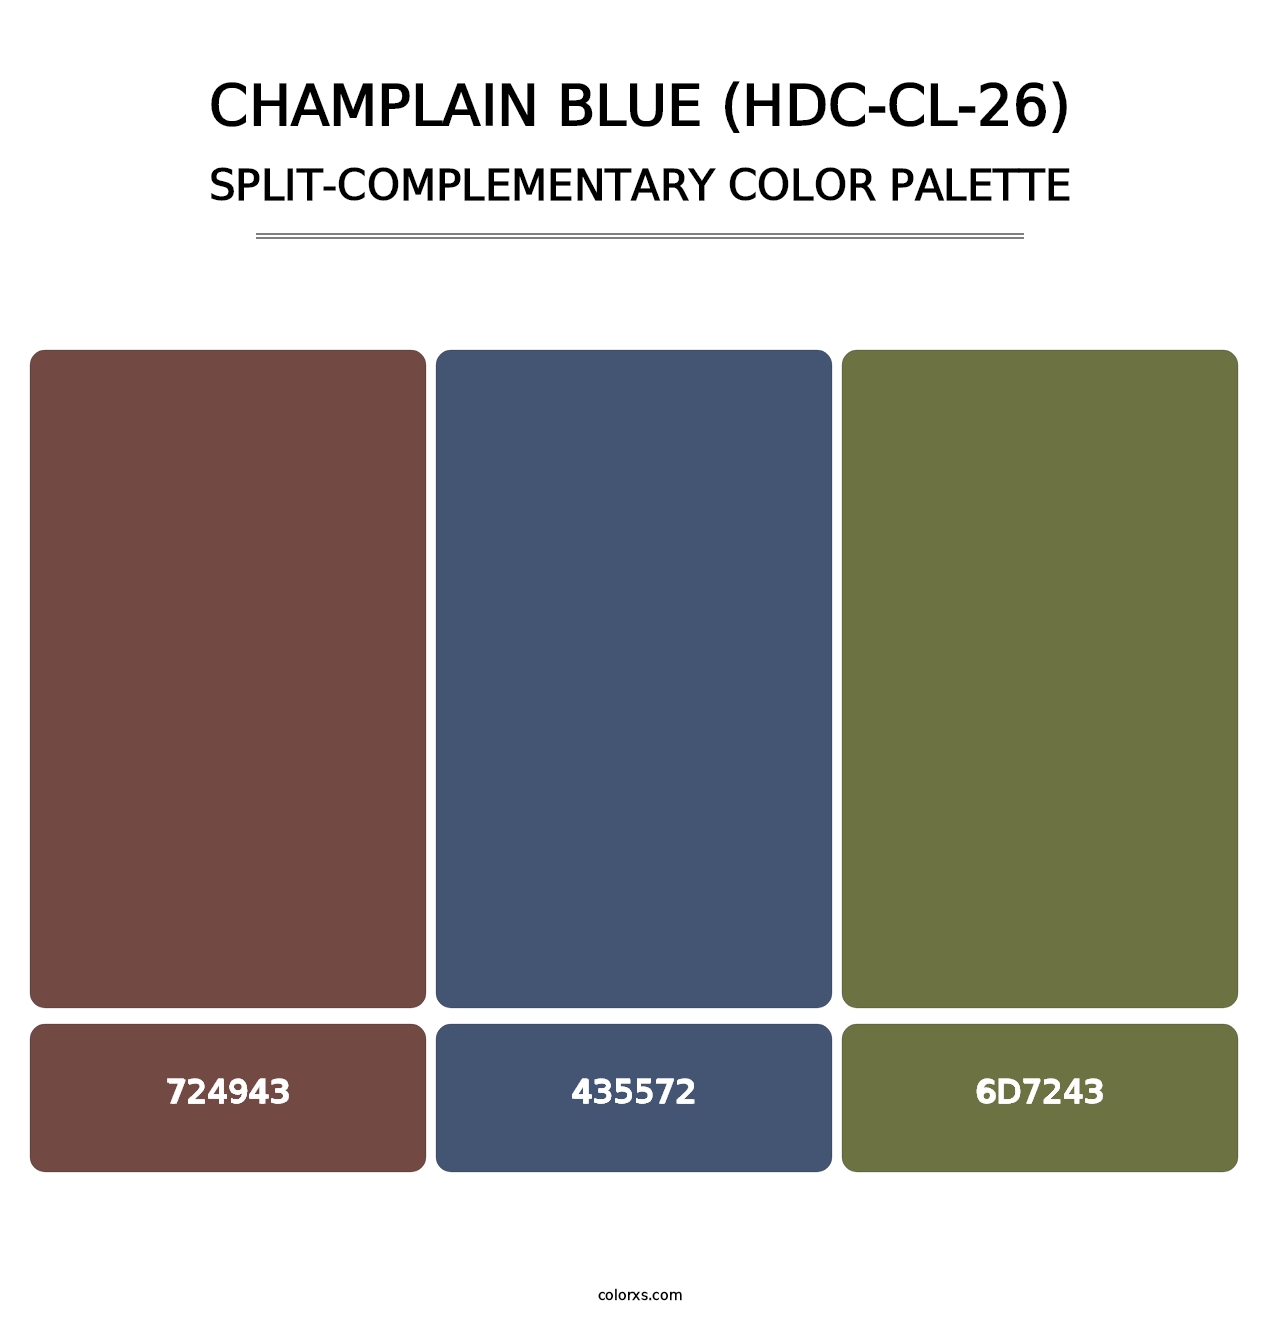 Champlain Blue (HDC-CL-26) - Split-Complementary Color Palette